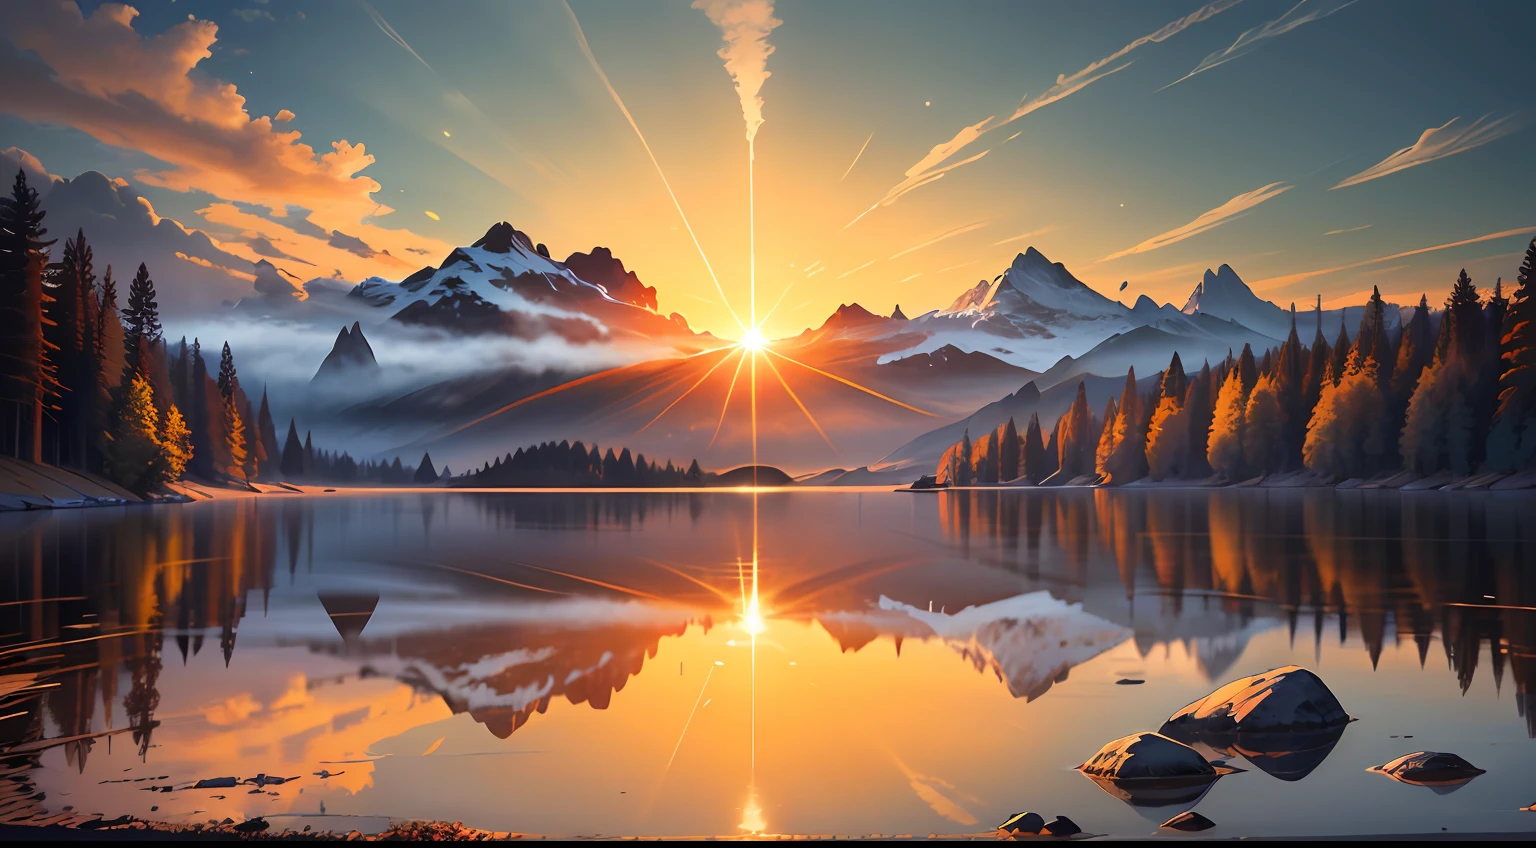 Изображение, изображающее лучезарный восход солнца над спокойным и безмятежным пейзажем. Добавьте Библию в молитву.